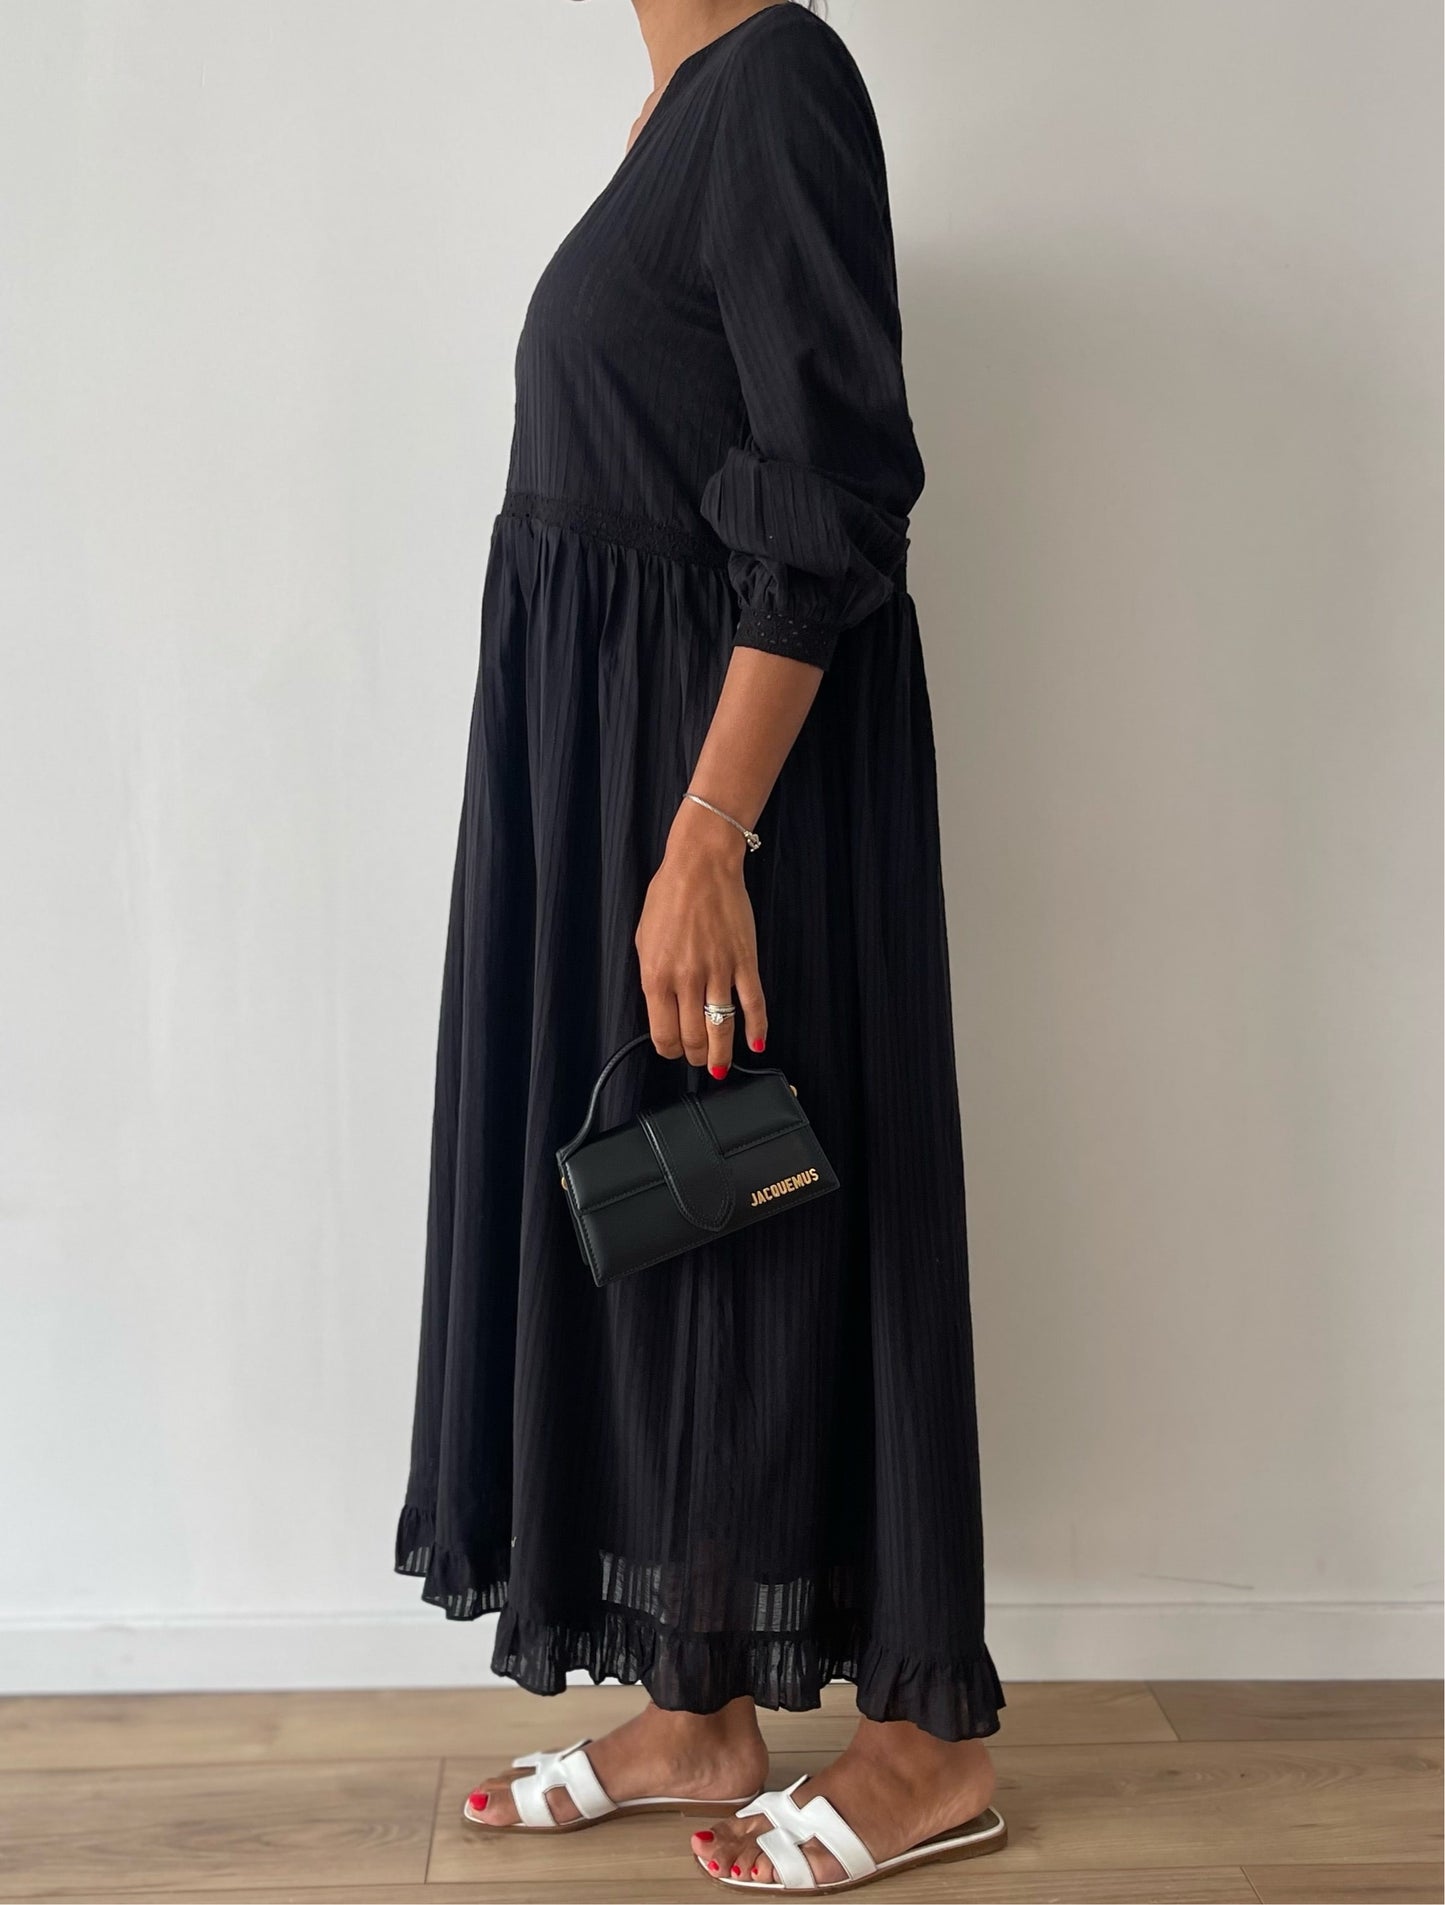 Robe en coton noir avec broderie artisanale et ourlet volanté